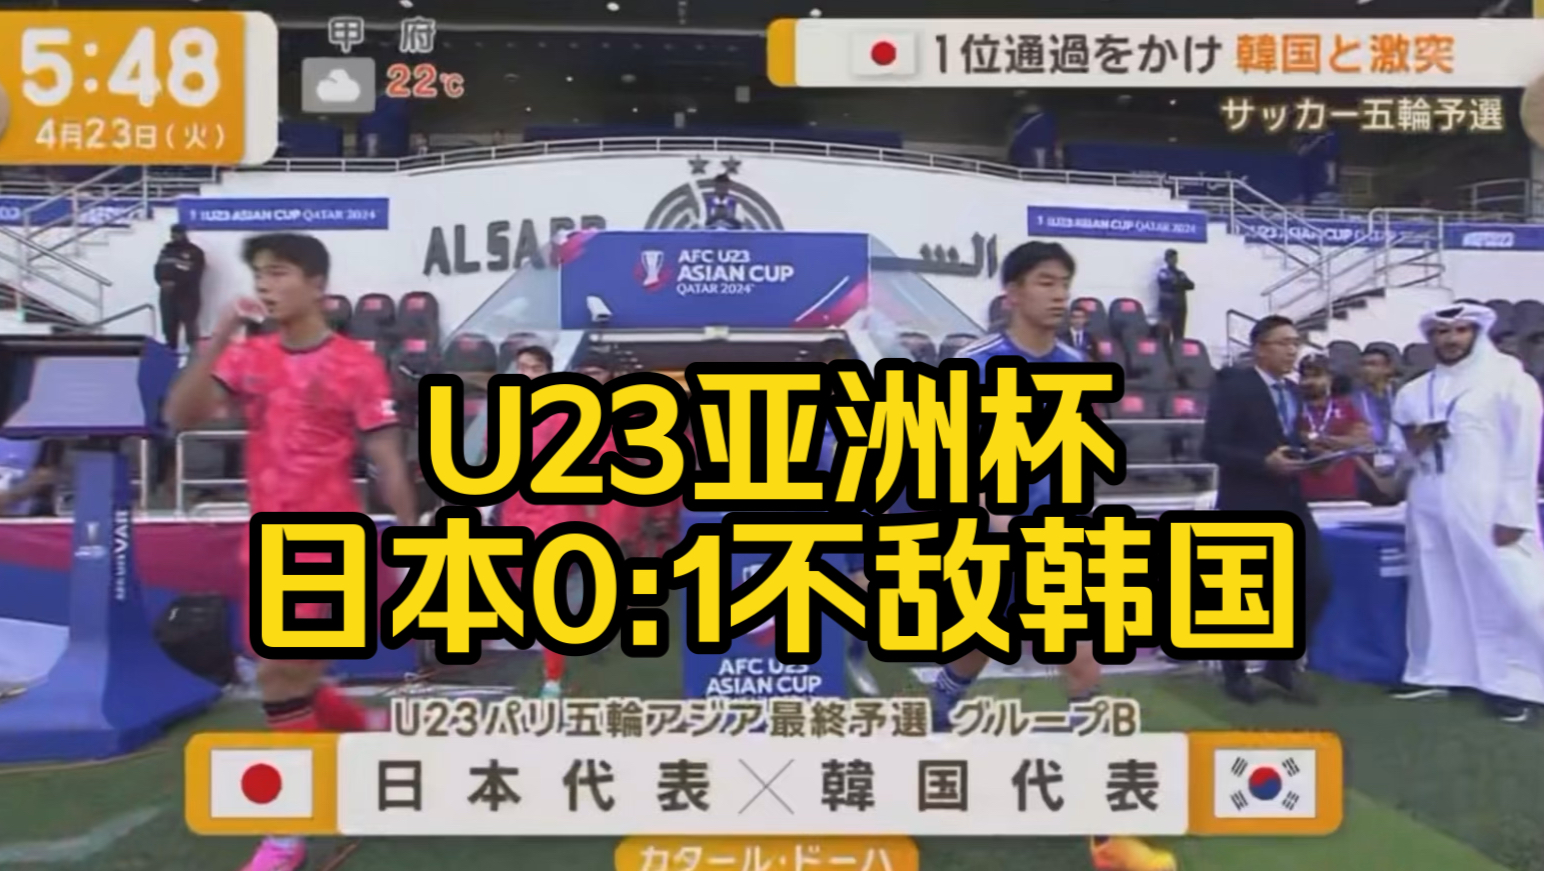 中文字幕~日媒报道U23亚洲杯日本0:1不敌韩国、淘汰赛将对阵东道主卡塔尔。